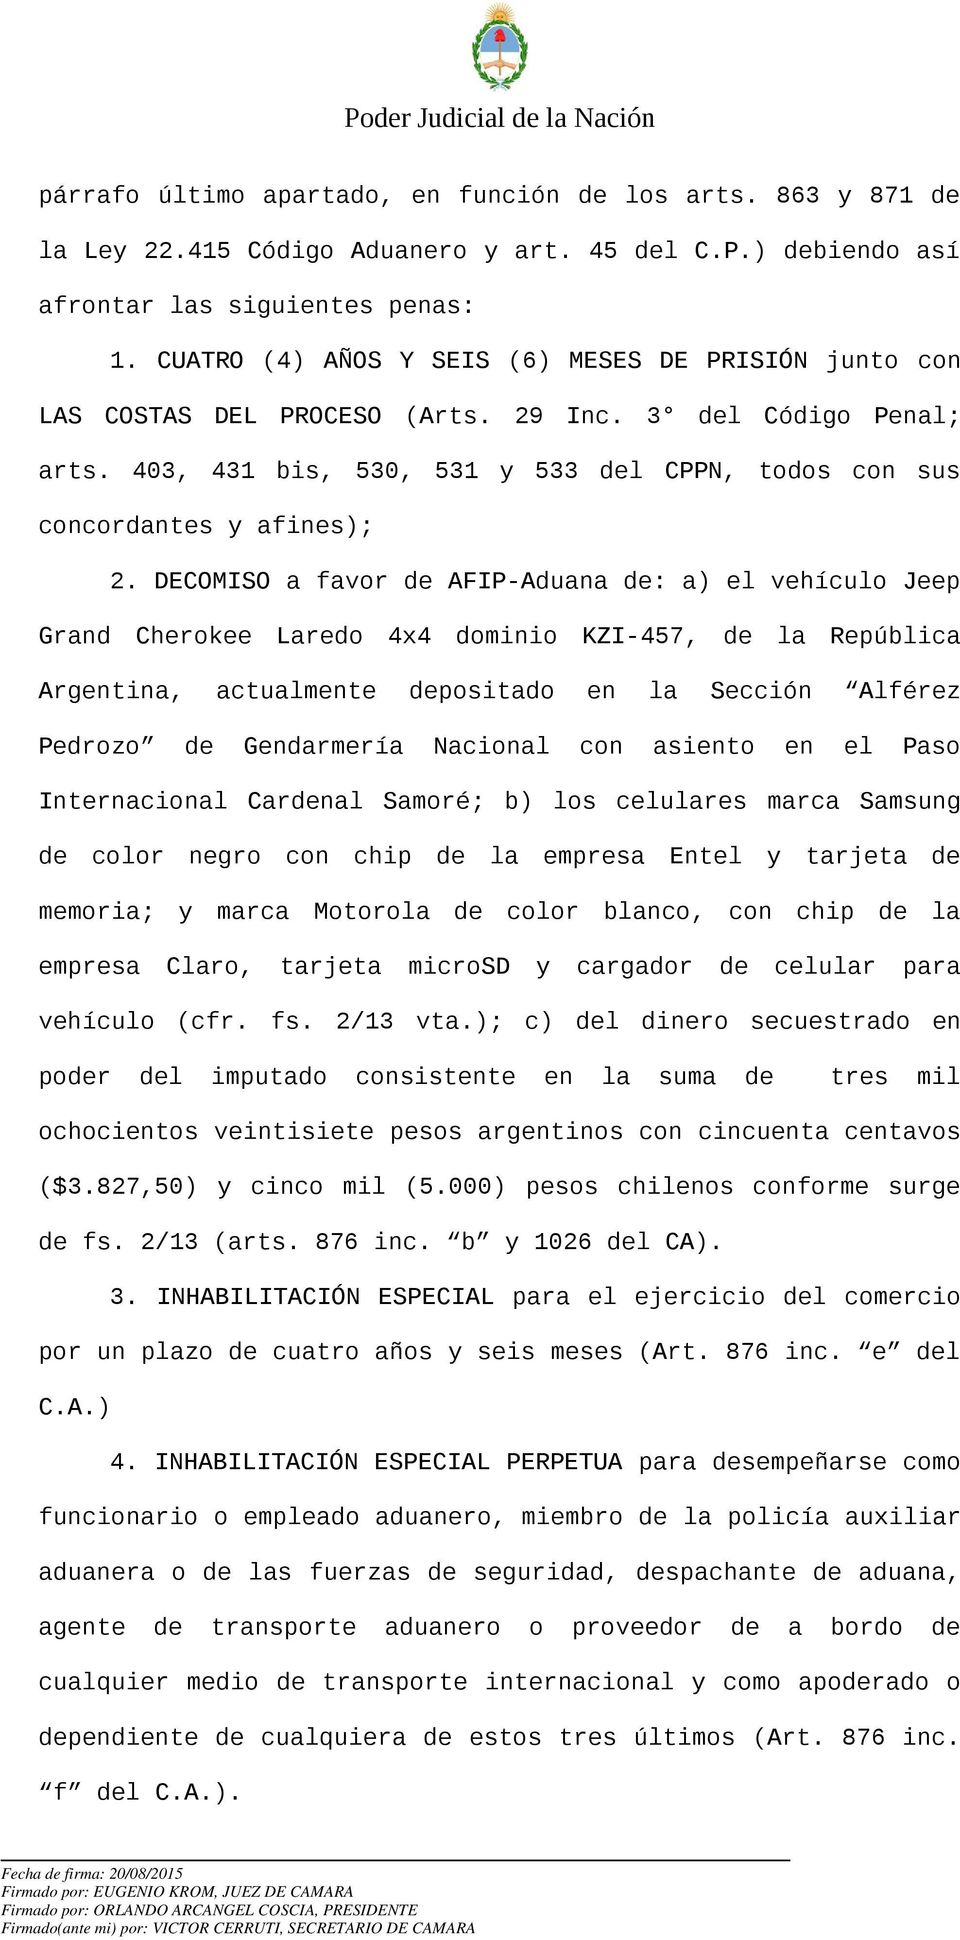 DECOMISO a favor de AFIP-Aduana de: a) el vehículo Jeep Grand Cherokee Laredo 4x4 dominio KZI-457, de la República Argentina, actualmente depositado en la Sección Alférez Pedrozo de Gendarmería